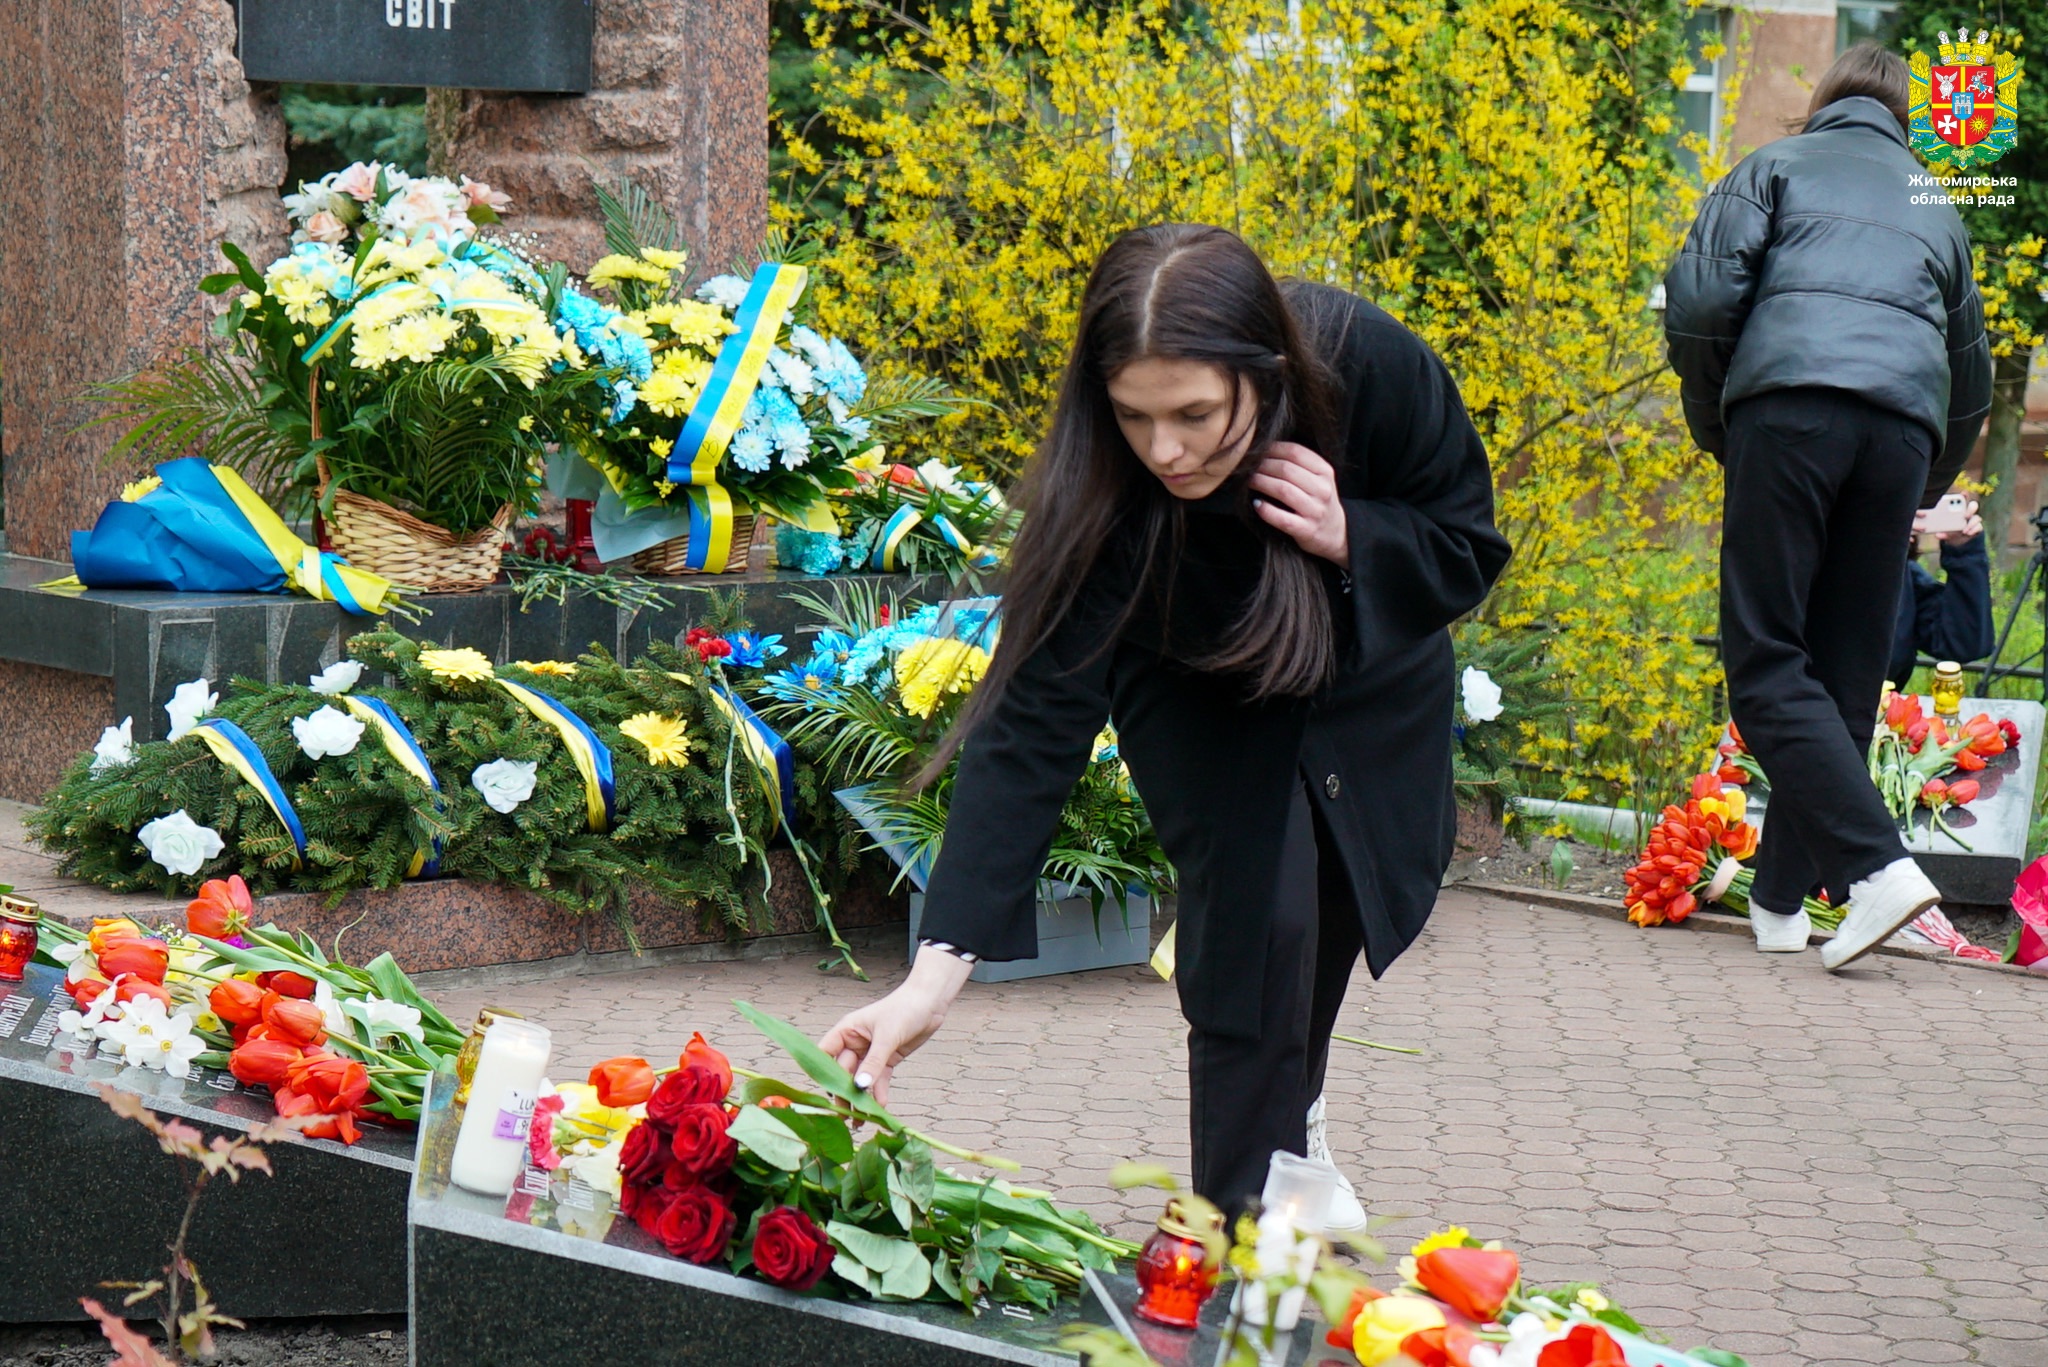 Володимир Ширма: Аварія на Чорнобильській АЕС - трагедія, яку ми не маємо права забути